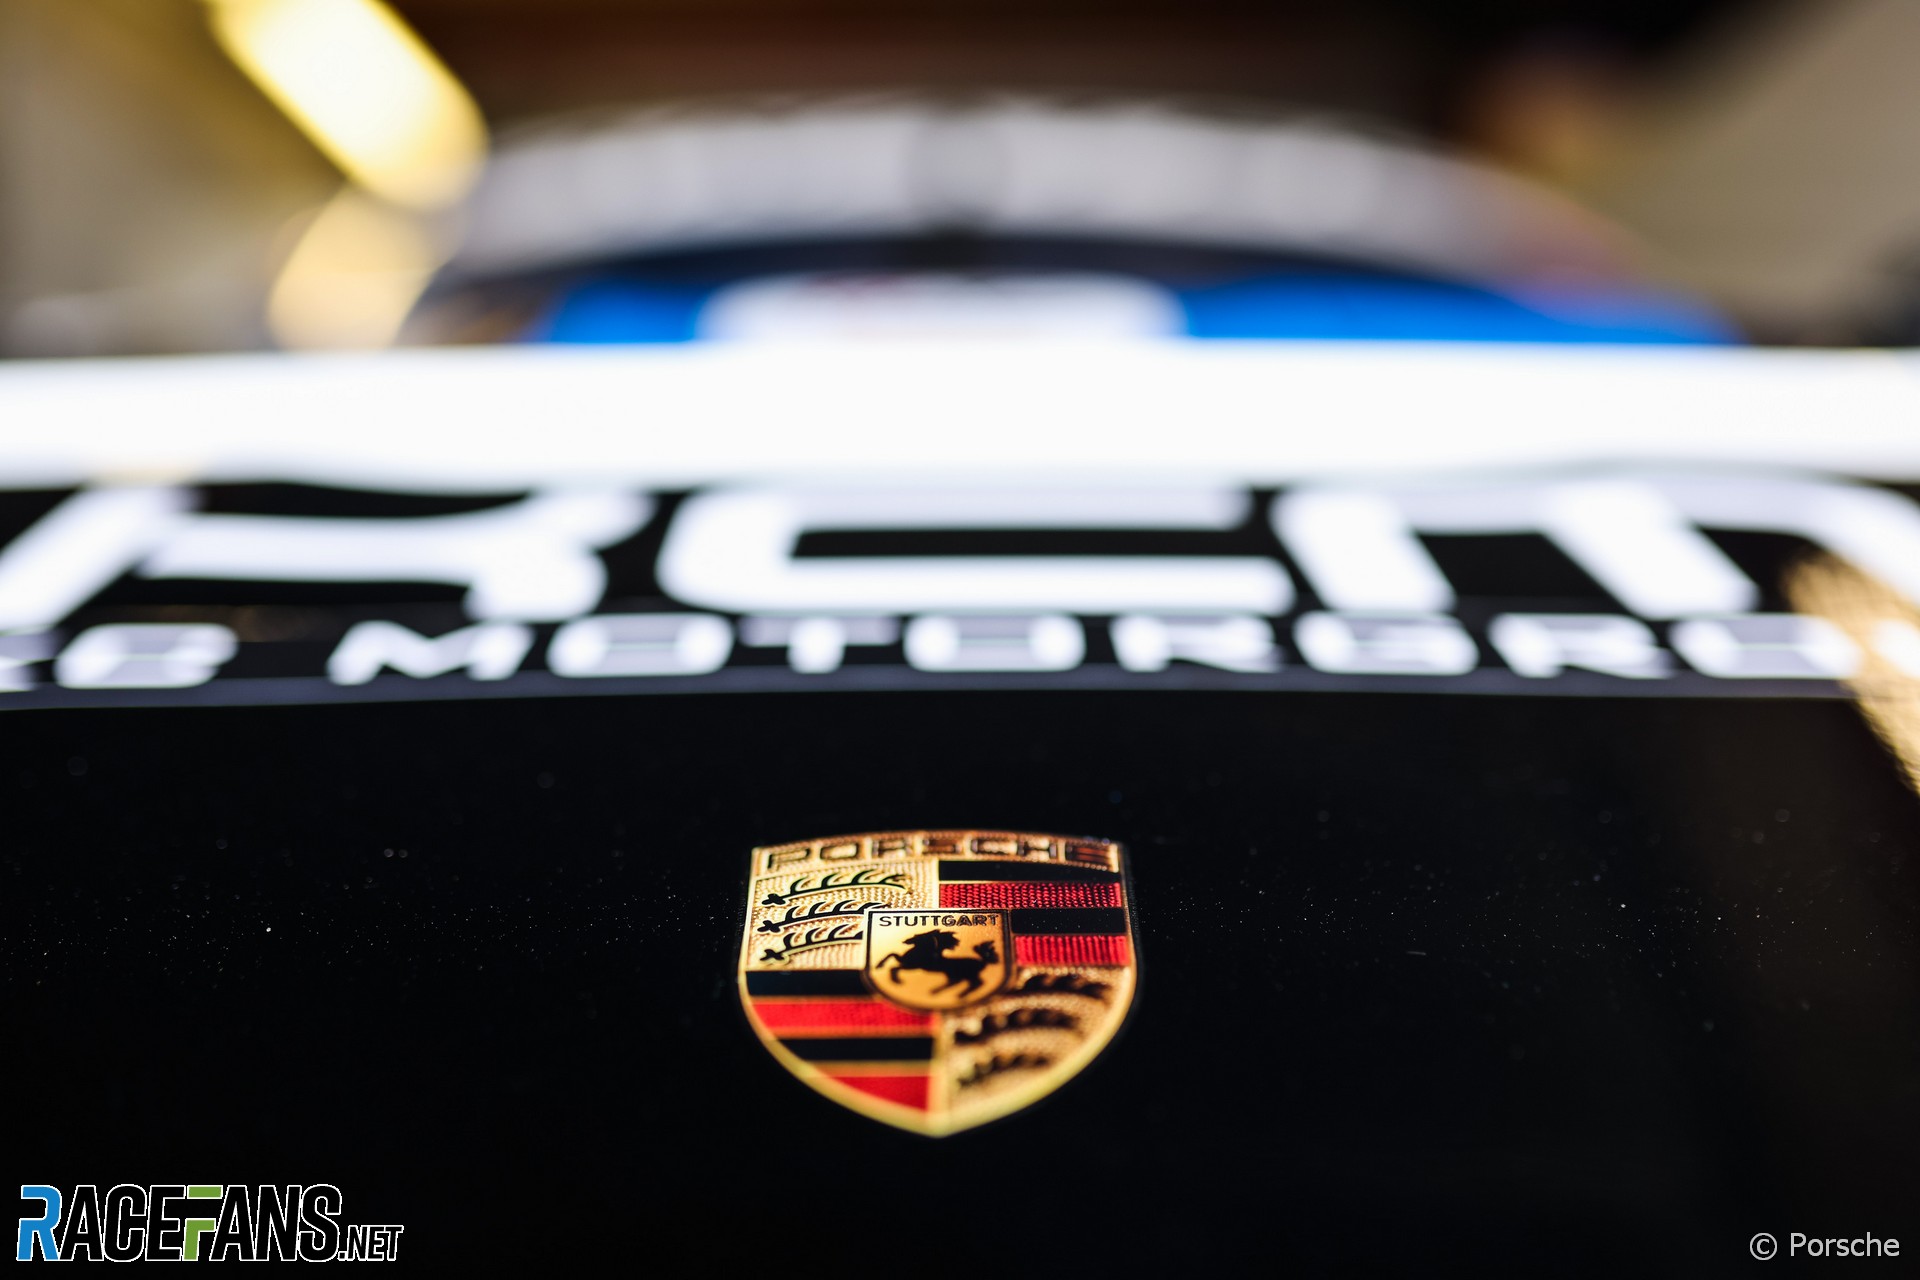 Porsche confirms it won’t enter Formula 1 with Red Bull · RaceFans